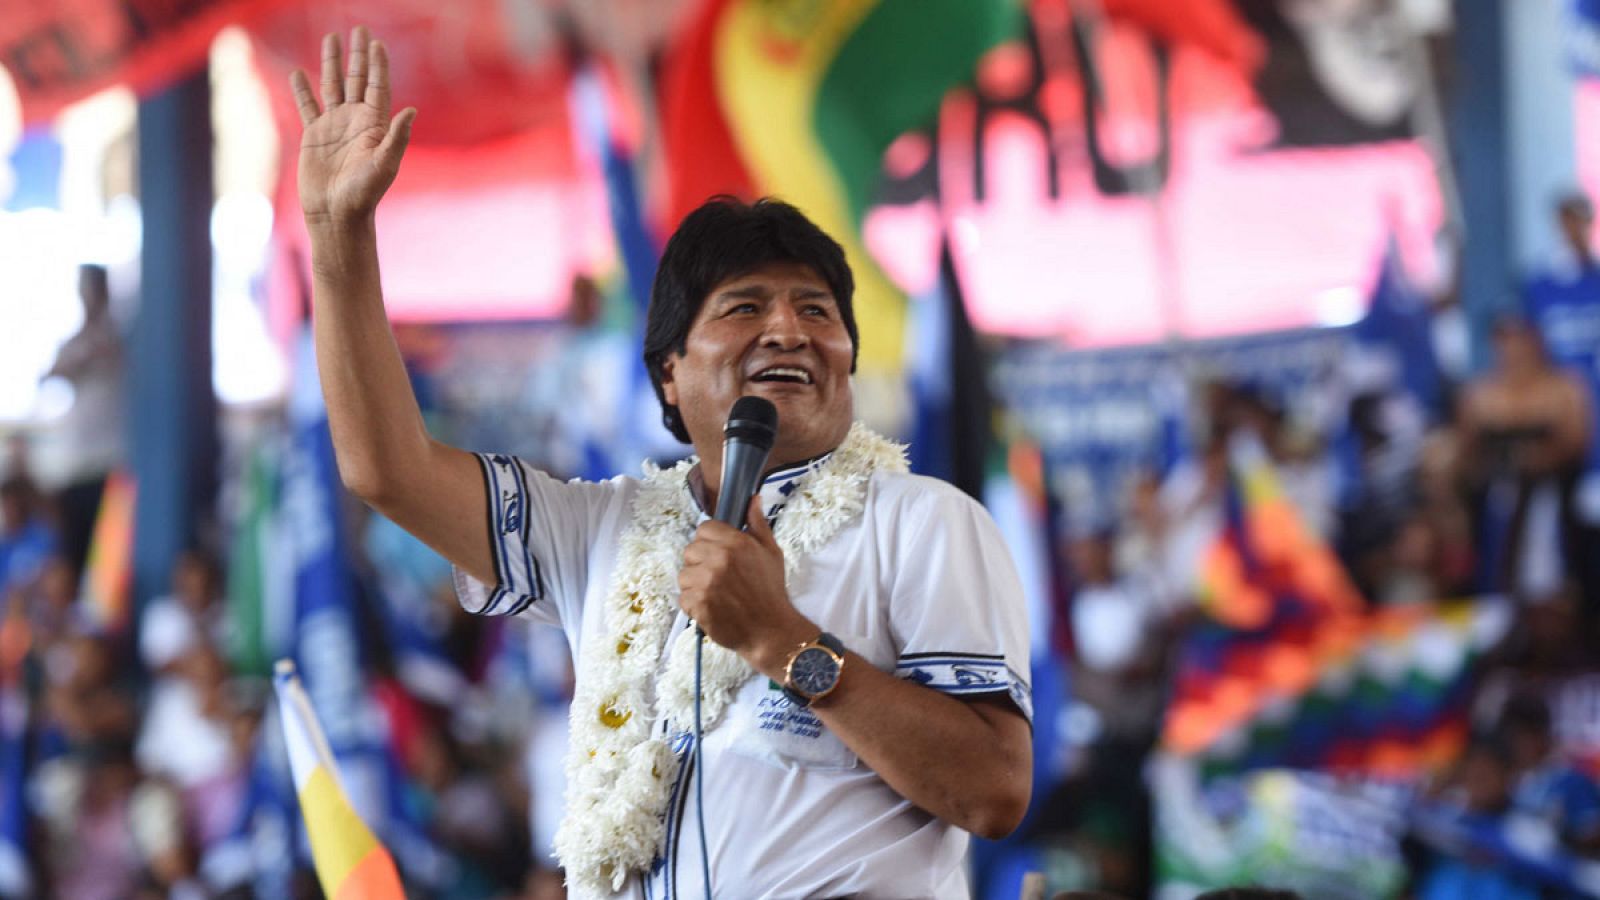 El presidente de Bolivia, Evo Morales, participando en el congreso del Movimiento Al Socialismo (MAS) el pasado jueves 15 de diciembre de 2016, en Montero (Bolivia).